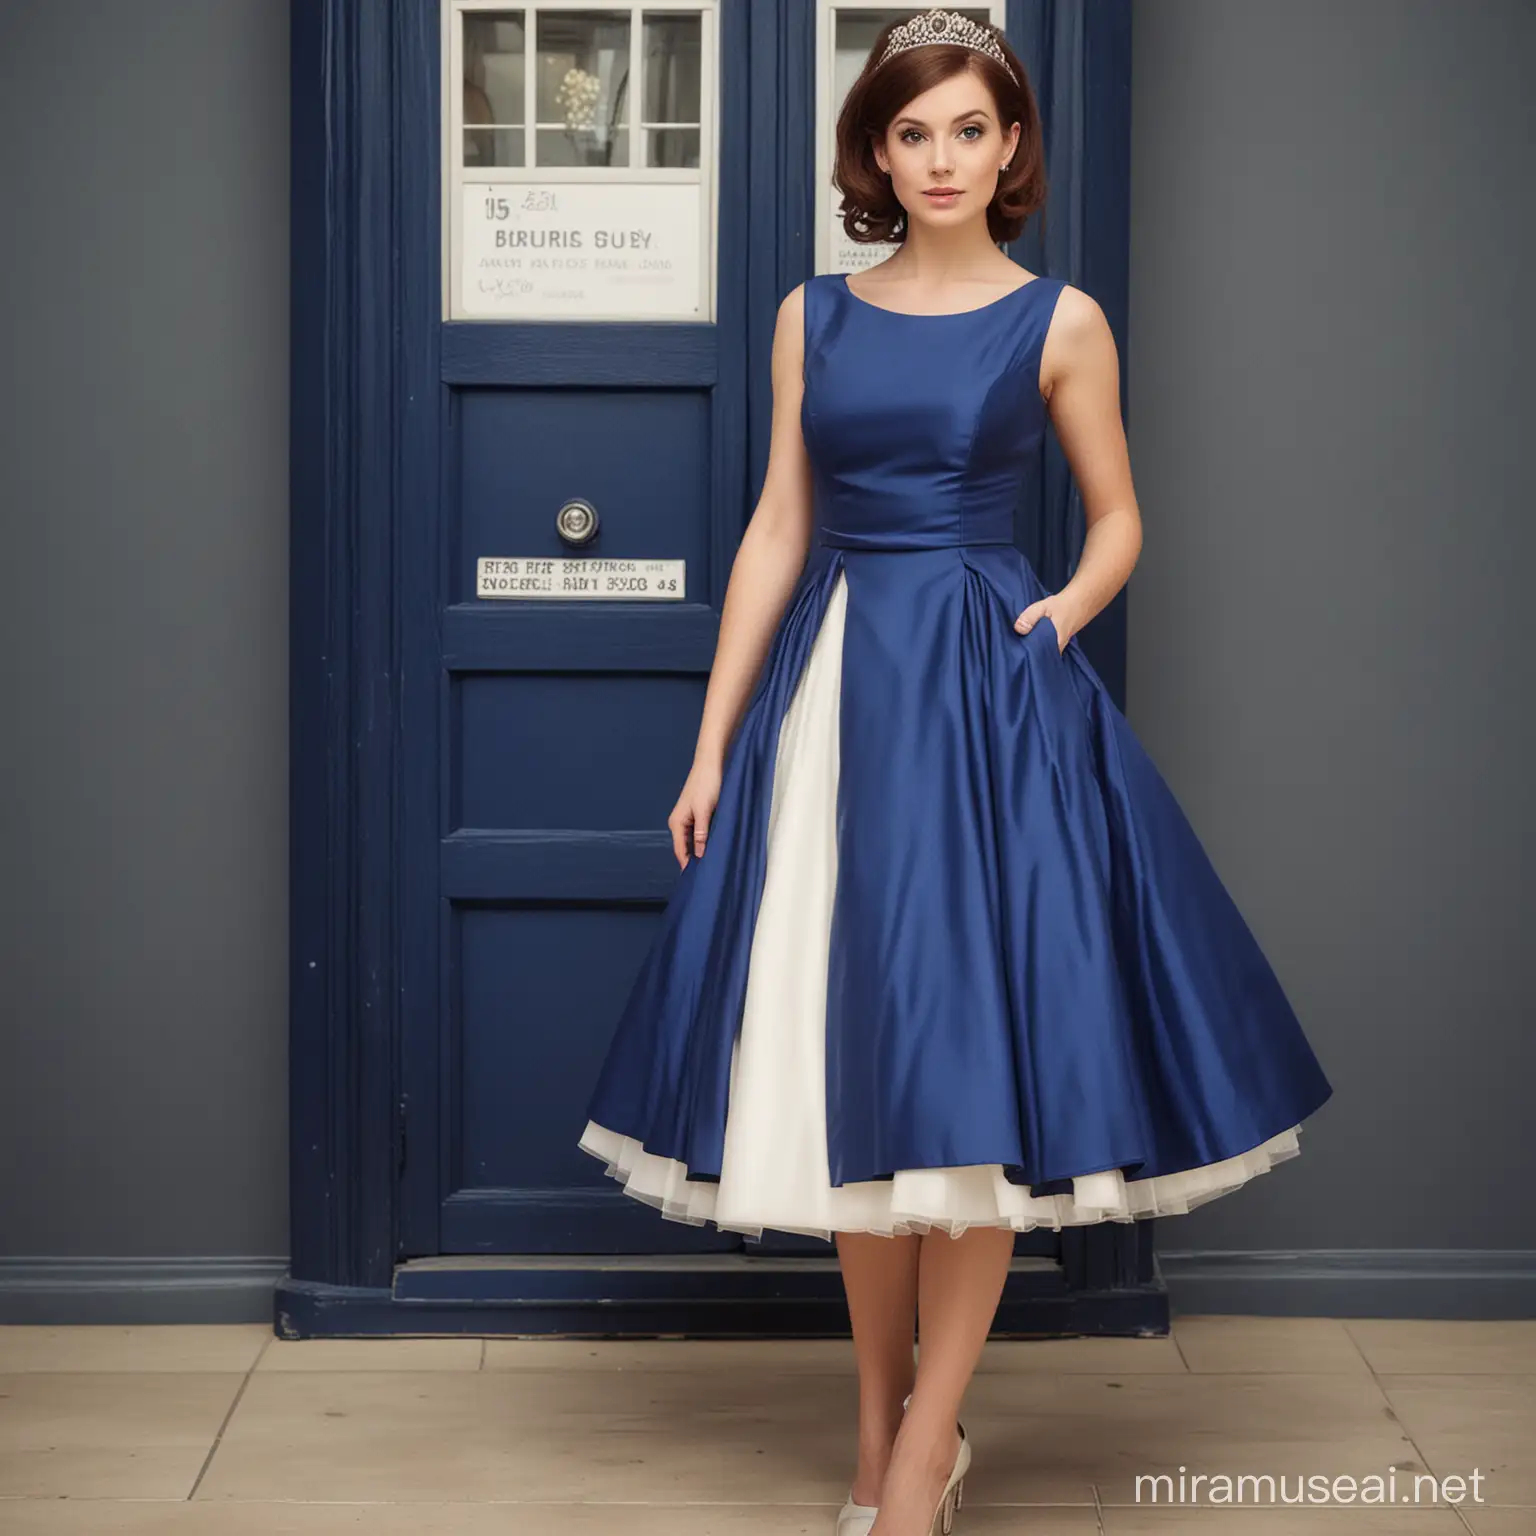 early 1960s inspired, feminine, tardis blue, wedding dress